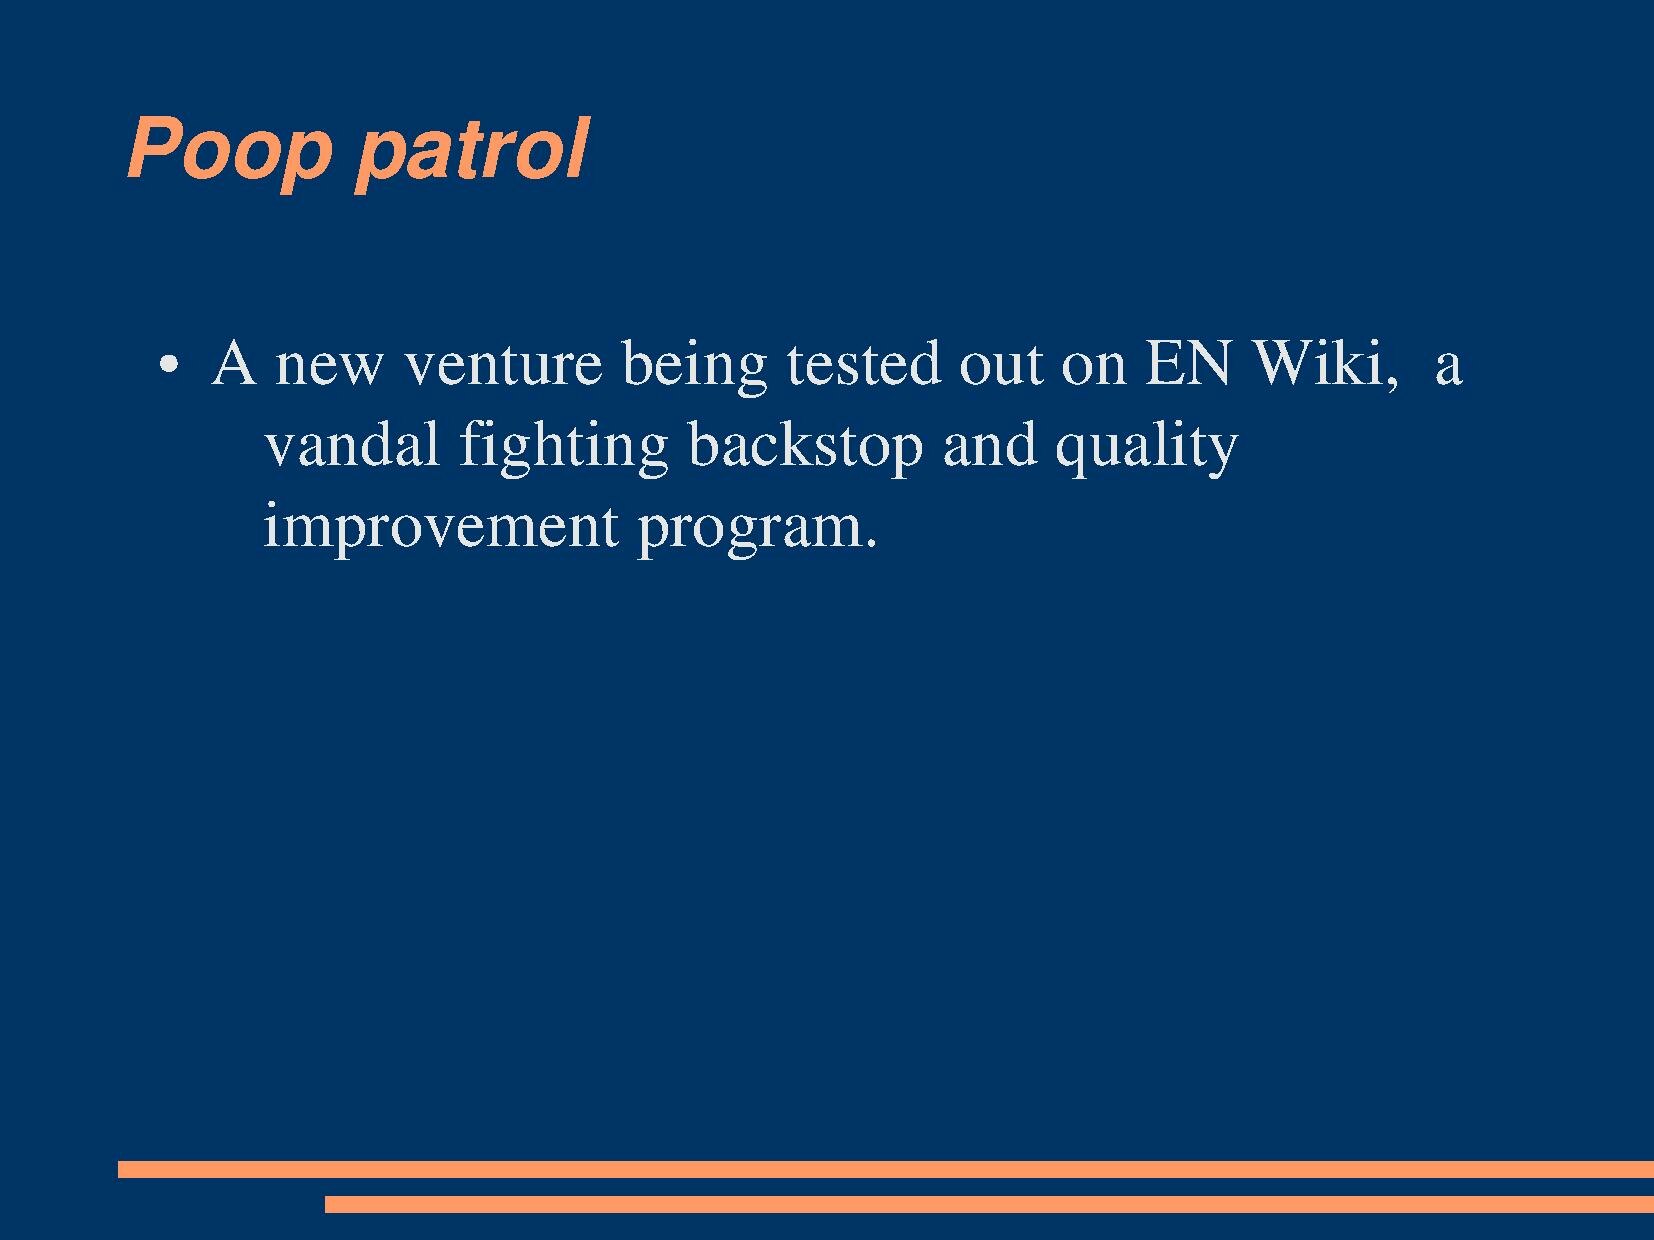 Poop patrol.pdf